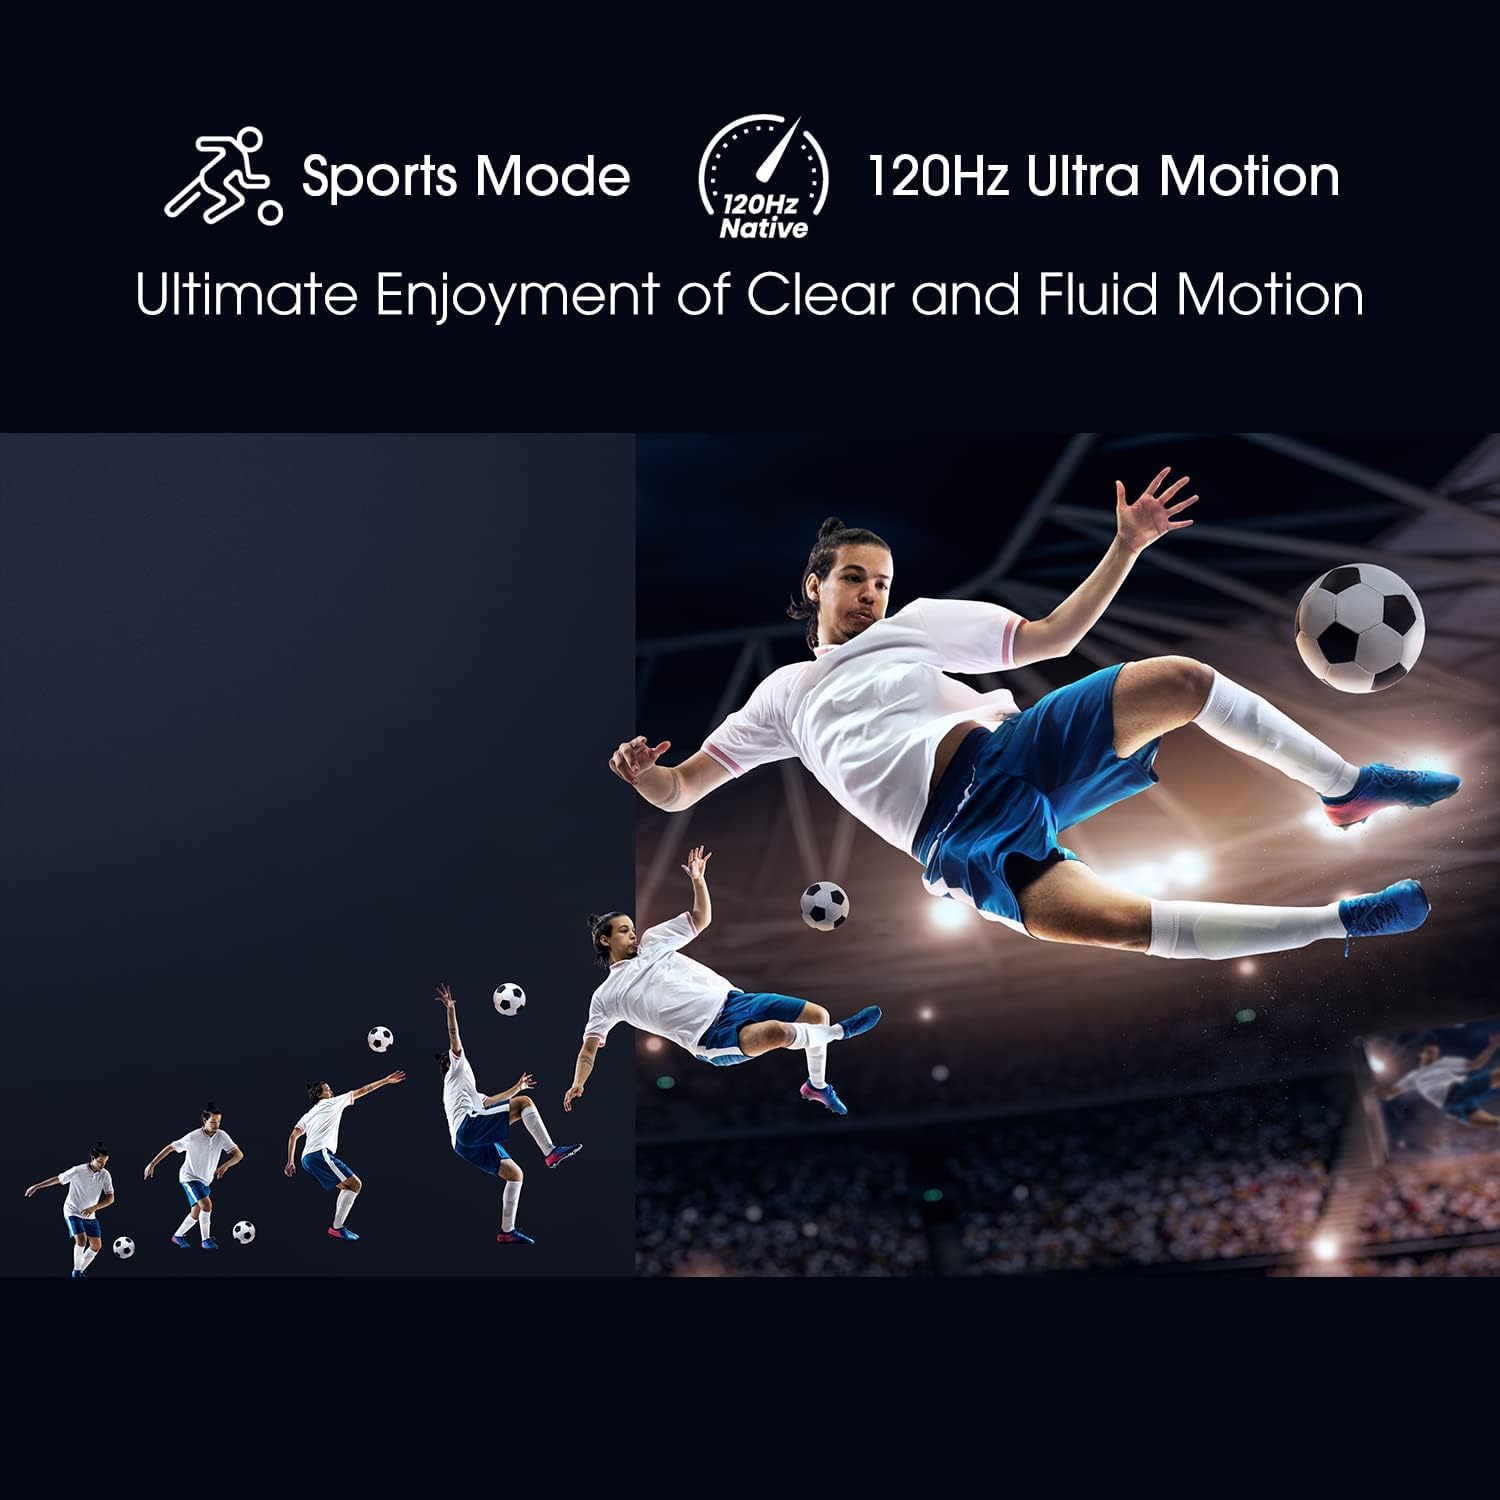 تلویزیون هایسنس 4K ULED مدل 65U7HQ | مشخصات - خرید و قیمت